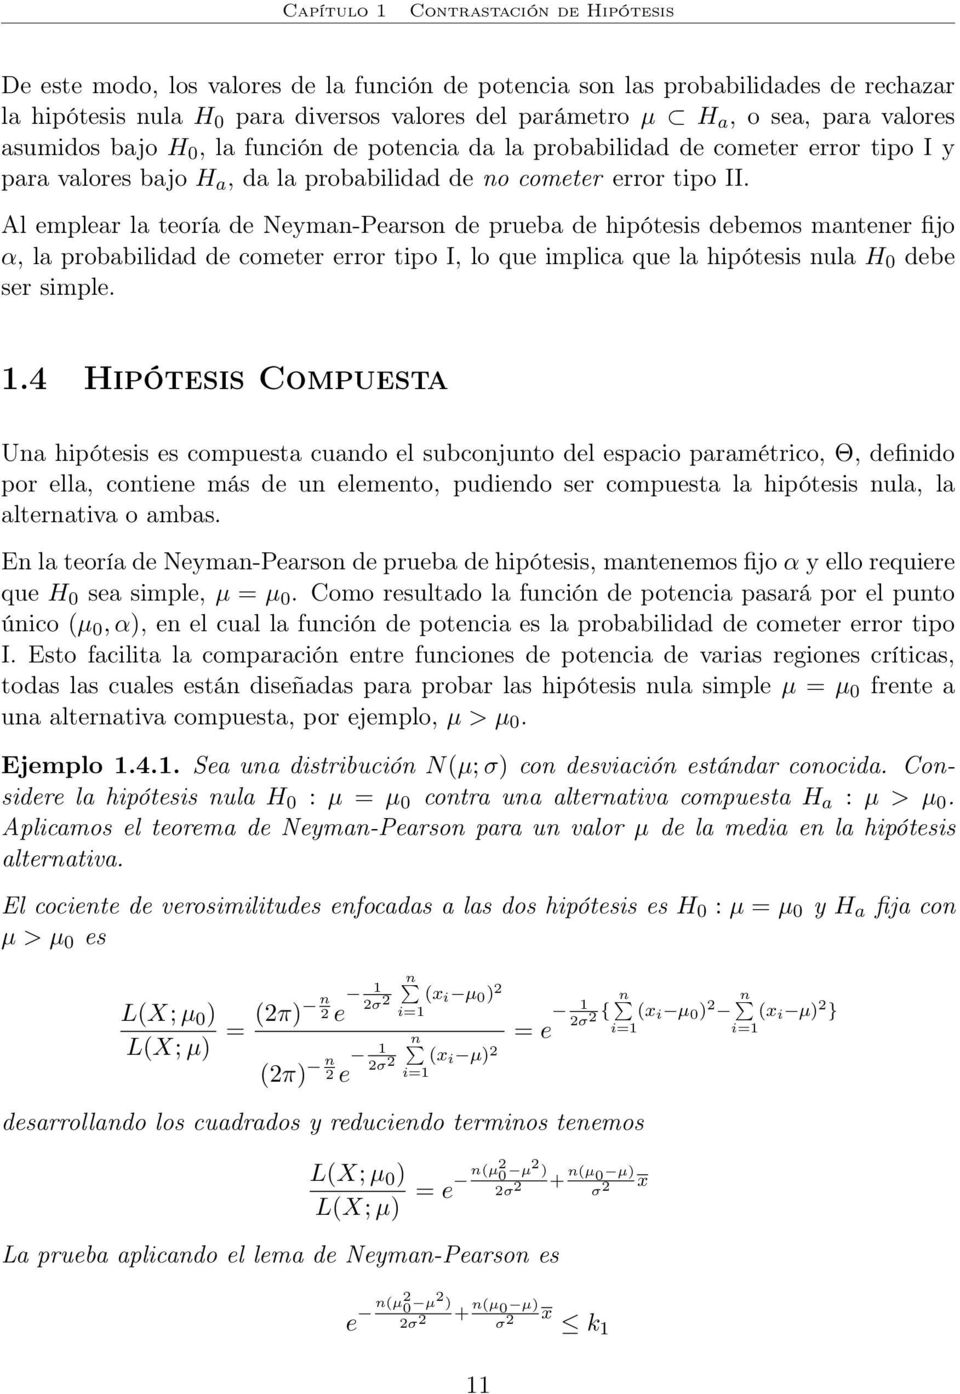 Al emplear la teoría de Neyman-Pearson de prueba de hipótesis debemos mantener fijo α, la probabilidad de cometer error tipo I, lo que implica que la hipótesis nula H 0 debe ser simple.